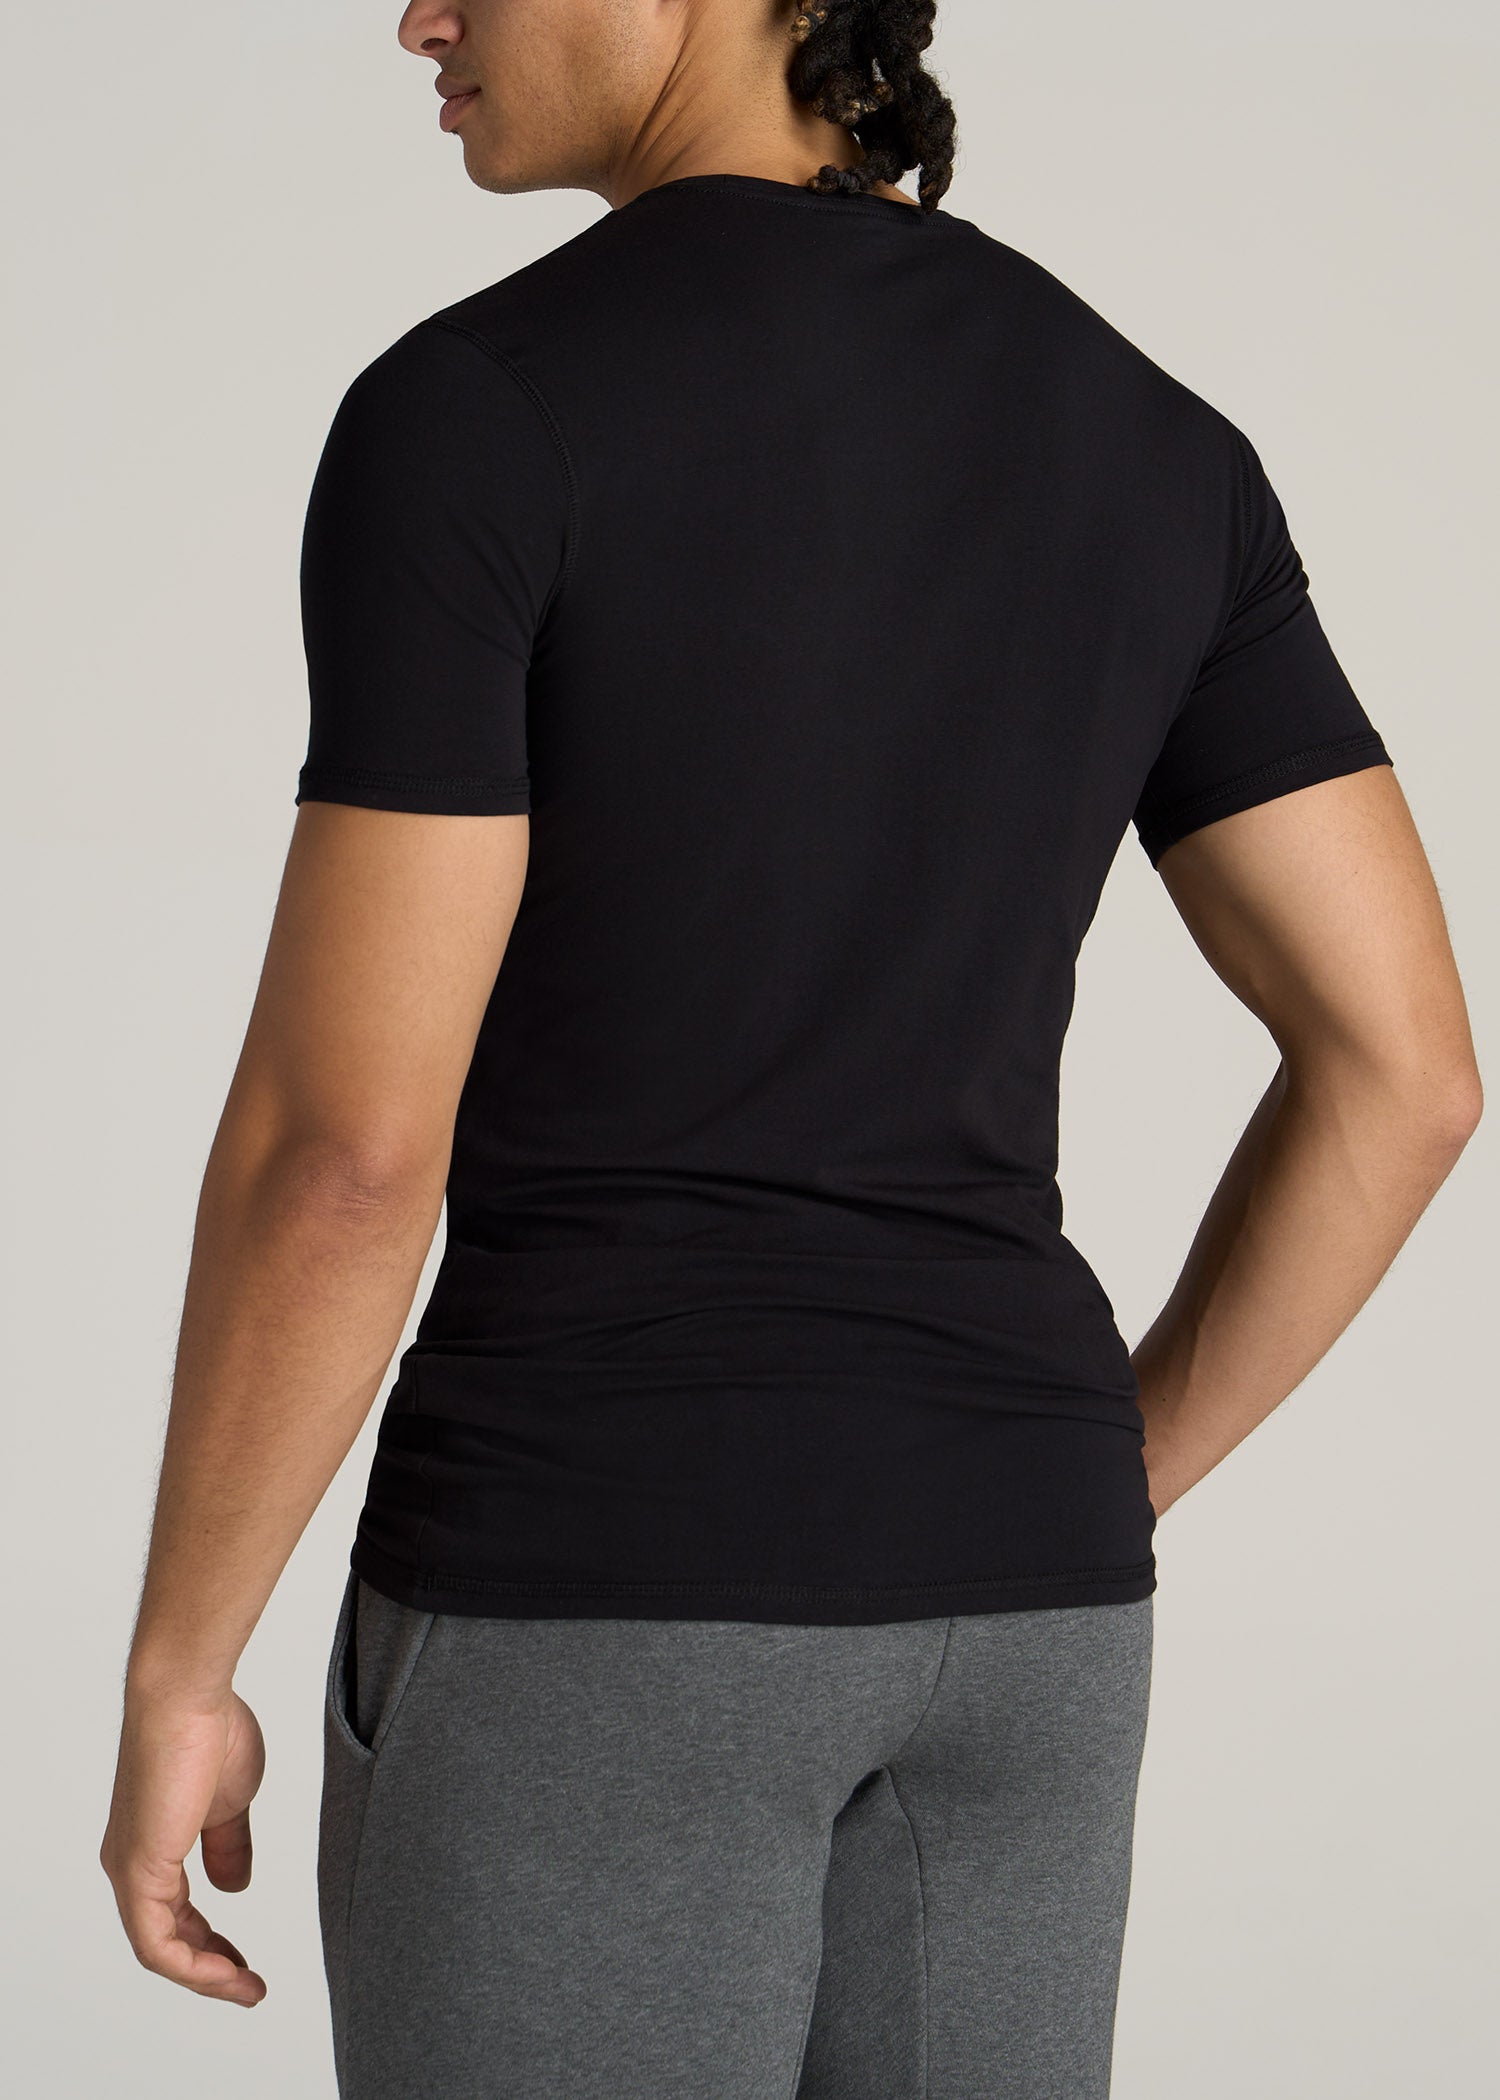 Black T-Shirt | Tall Men's Essentials | Tall